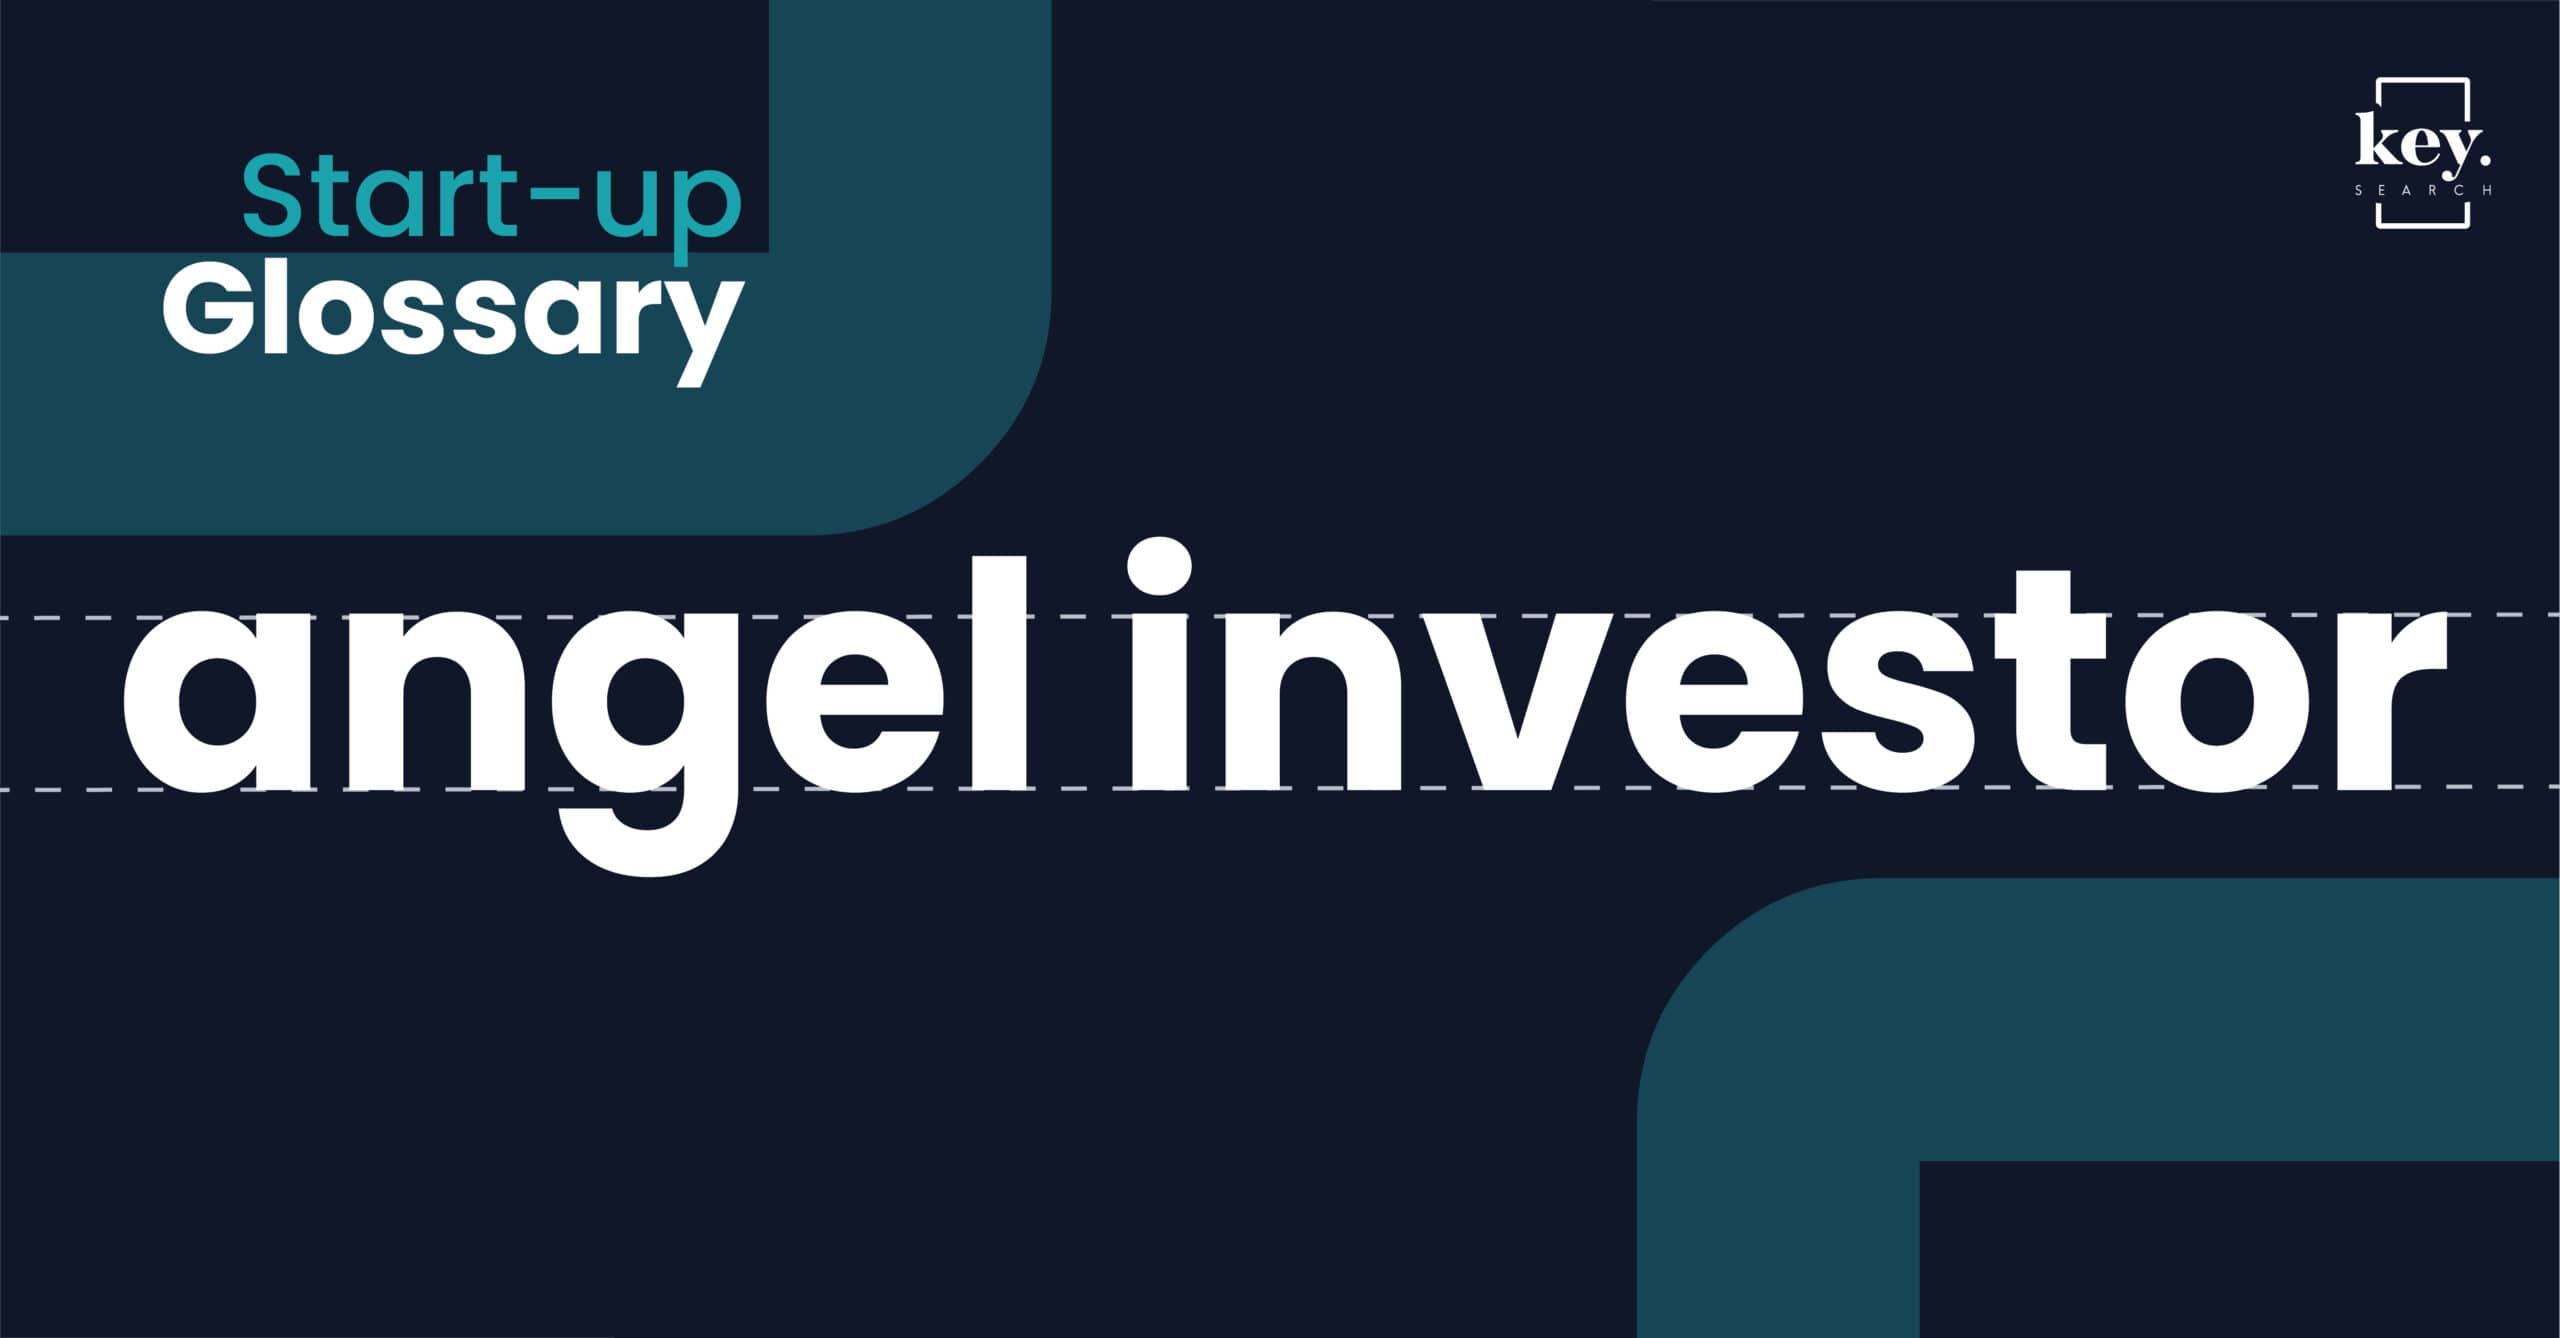 Start-up Glossary_Angel investor